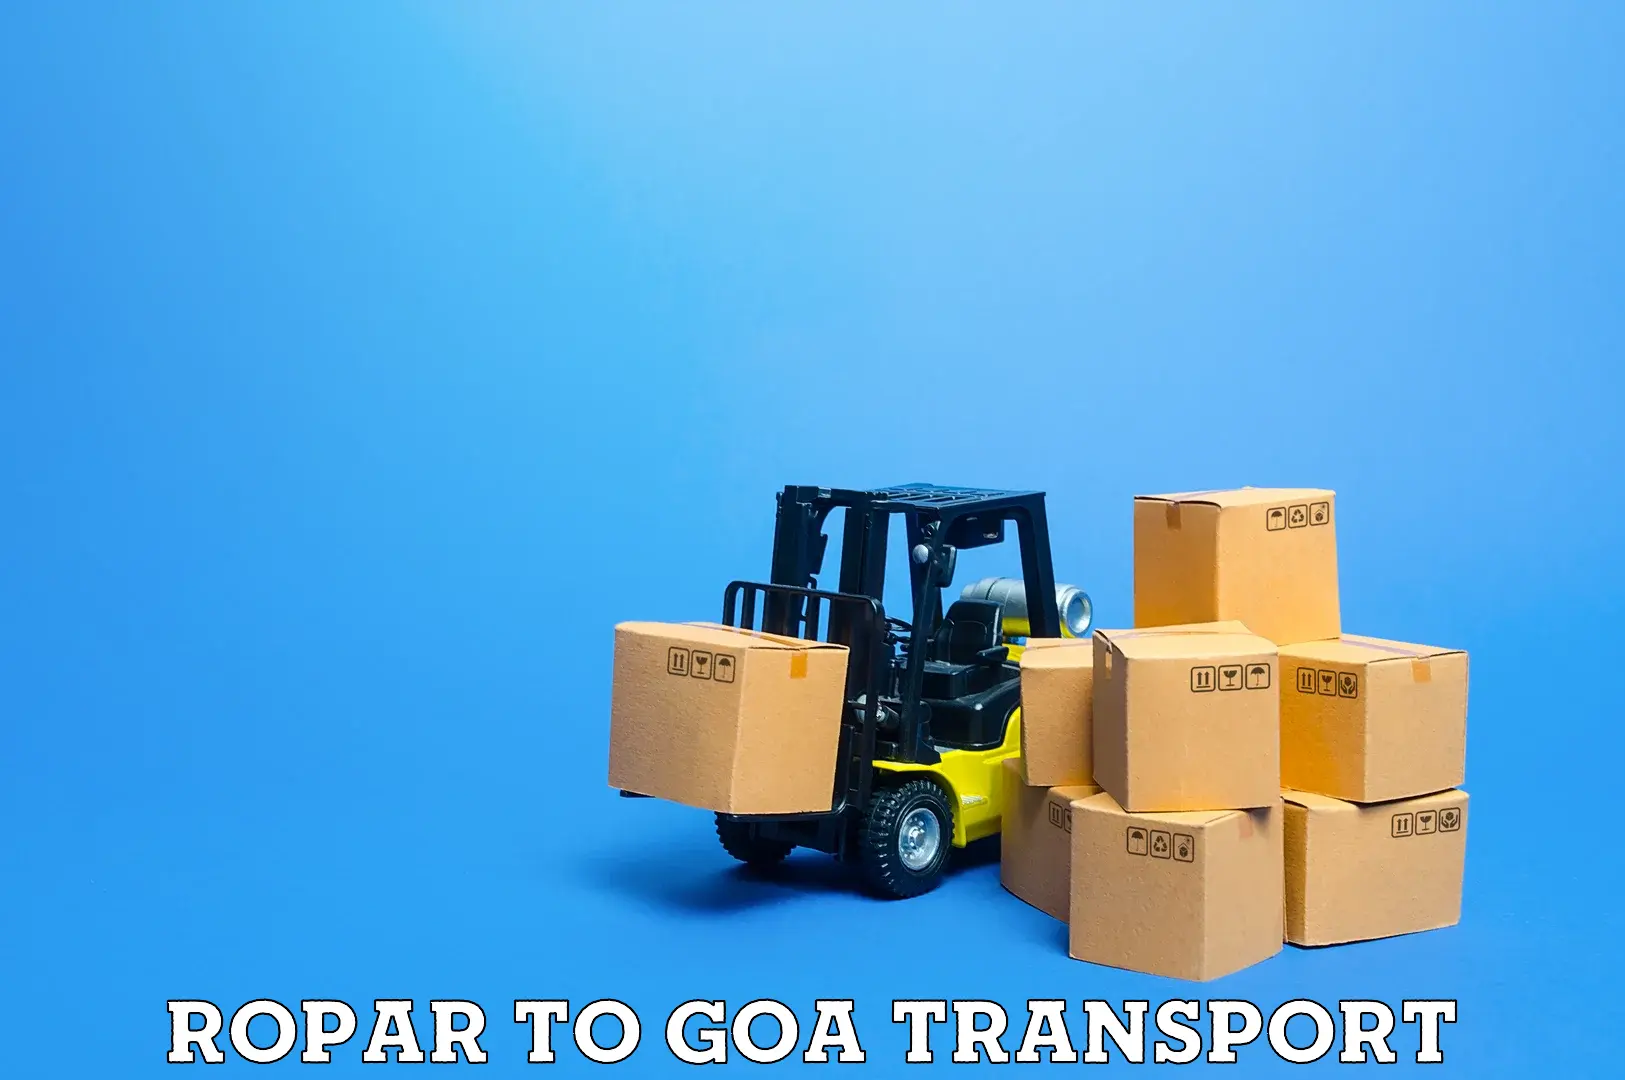 Daily transport service Ropar to Mormugao Port